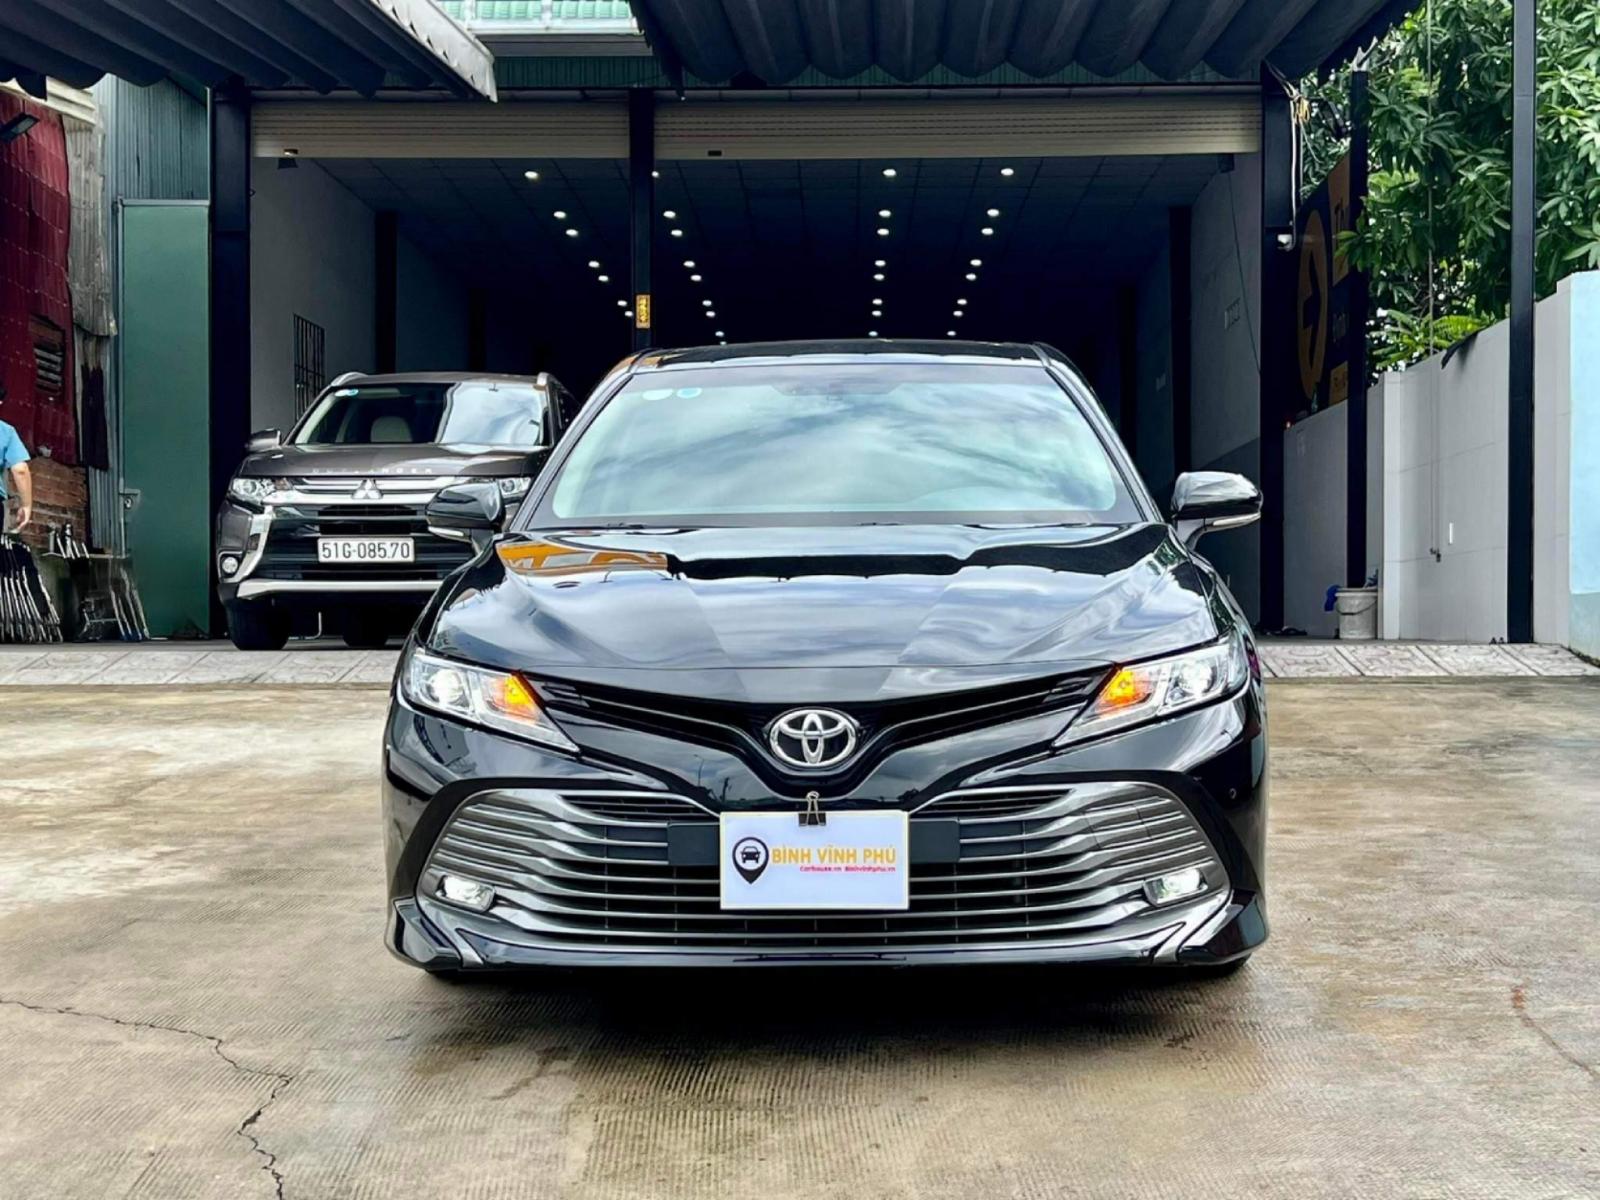 Ảnh xe Toyota Camry 25Q 2019 Đủ màu Đen Trắng Nâu Bạc Xám mới nhất